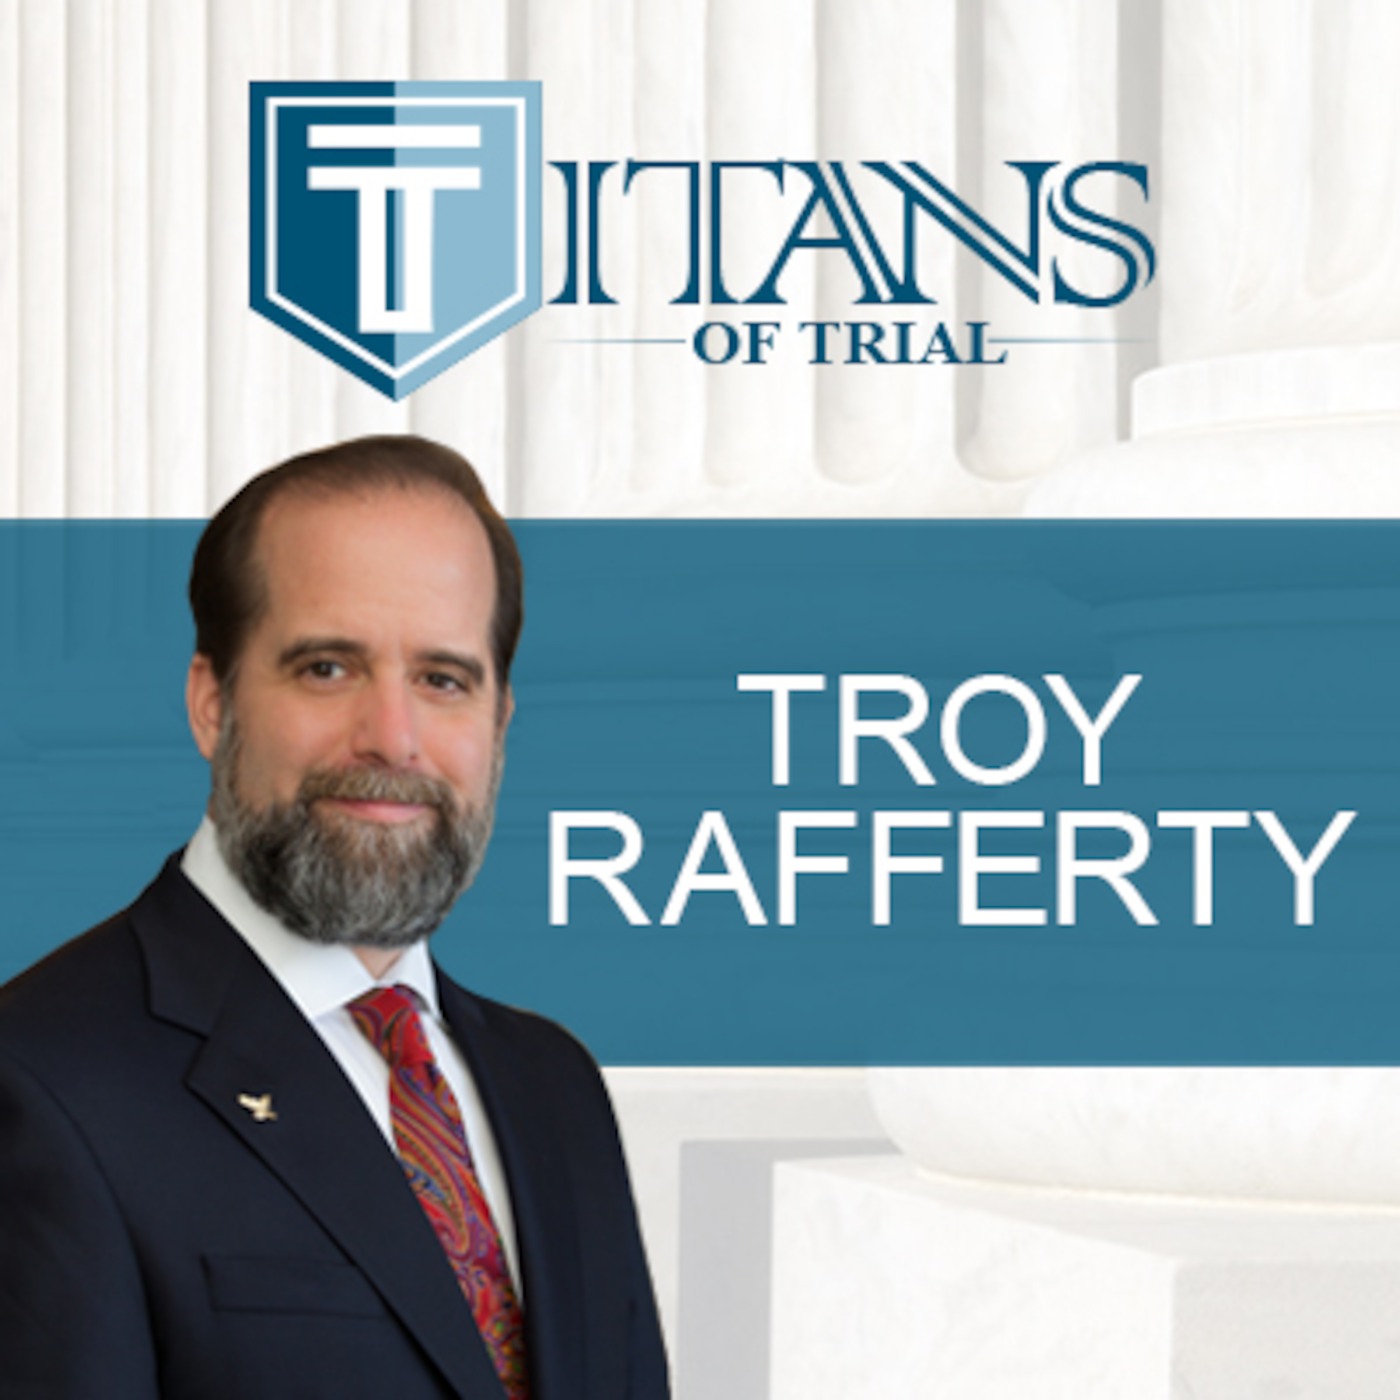 Titans of Trial - Troy Rafferty